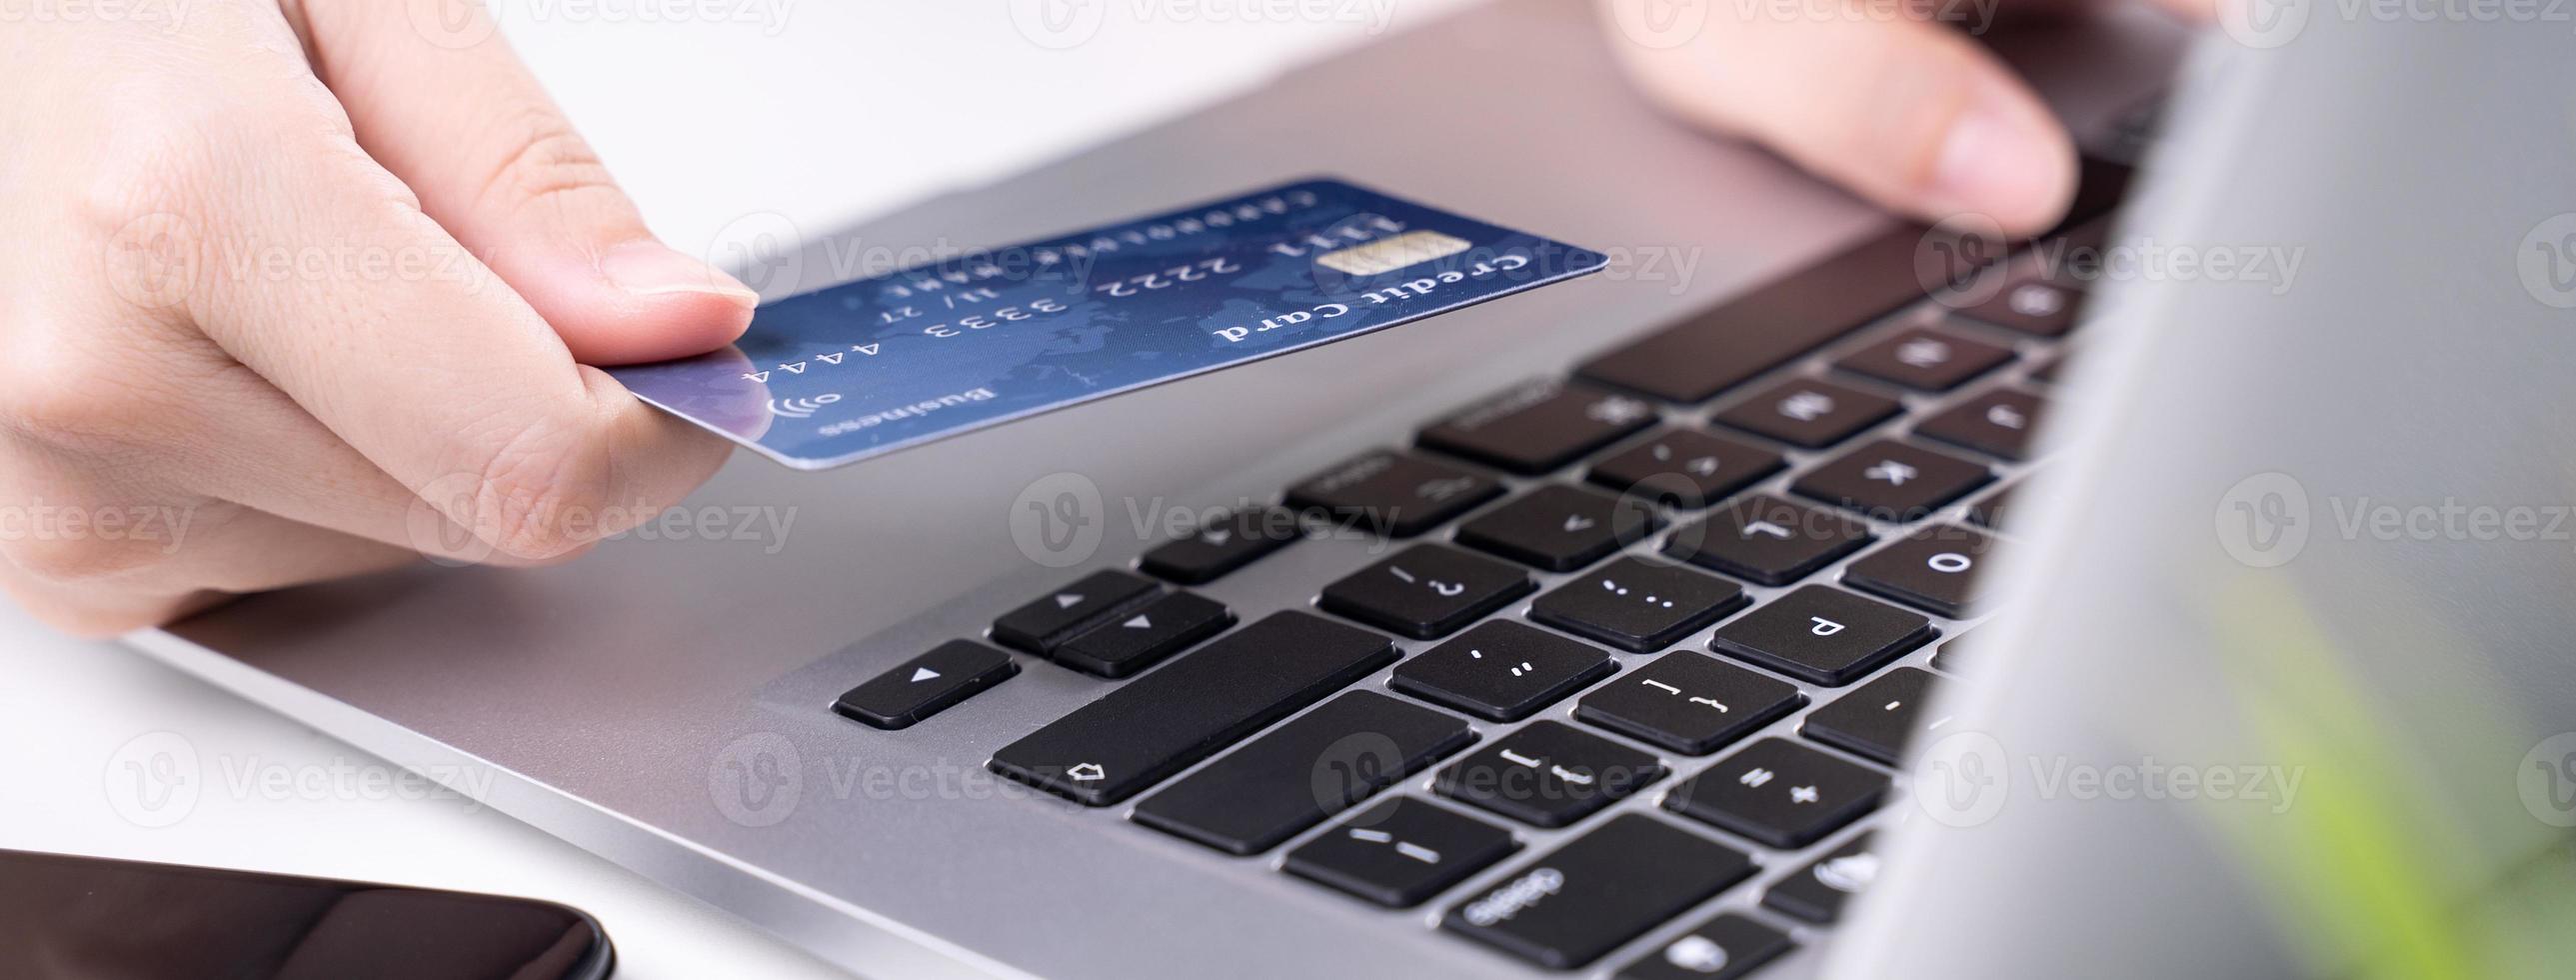 paiement en ligne de bureau, achats à domicile, paiement électronique avec concept de carte de crédit, ordinateur portable sur fond de tableau blanc avec panier, gros plan. photo